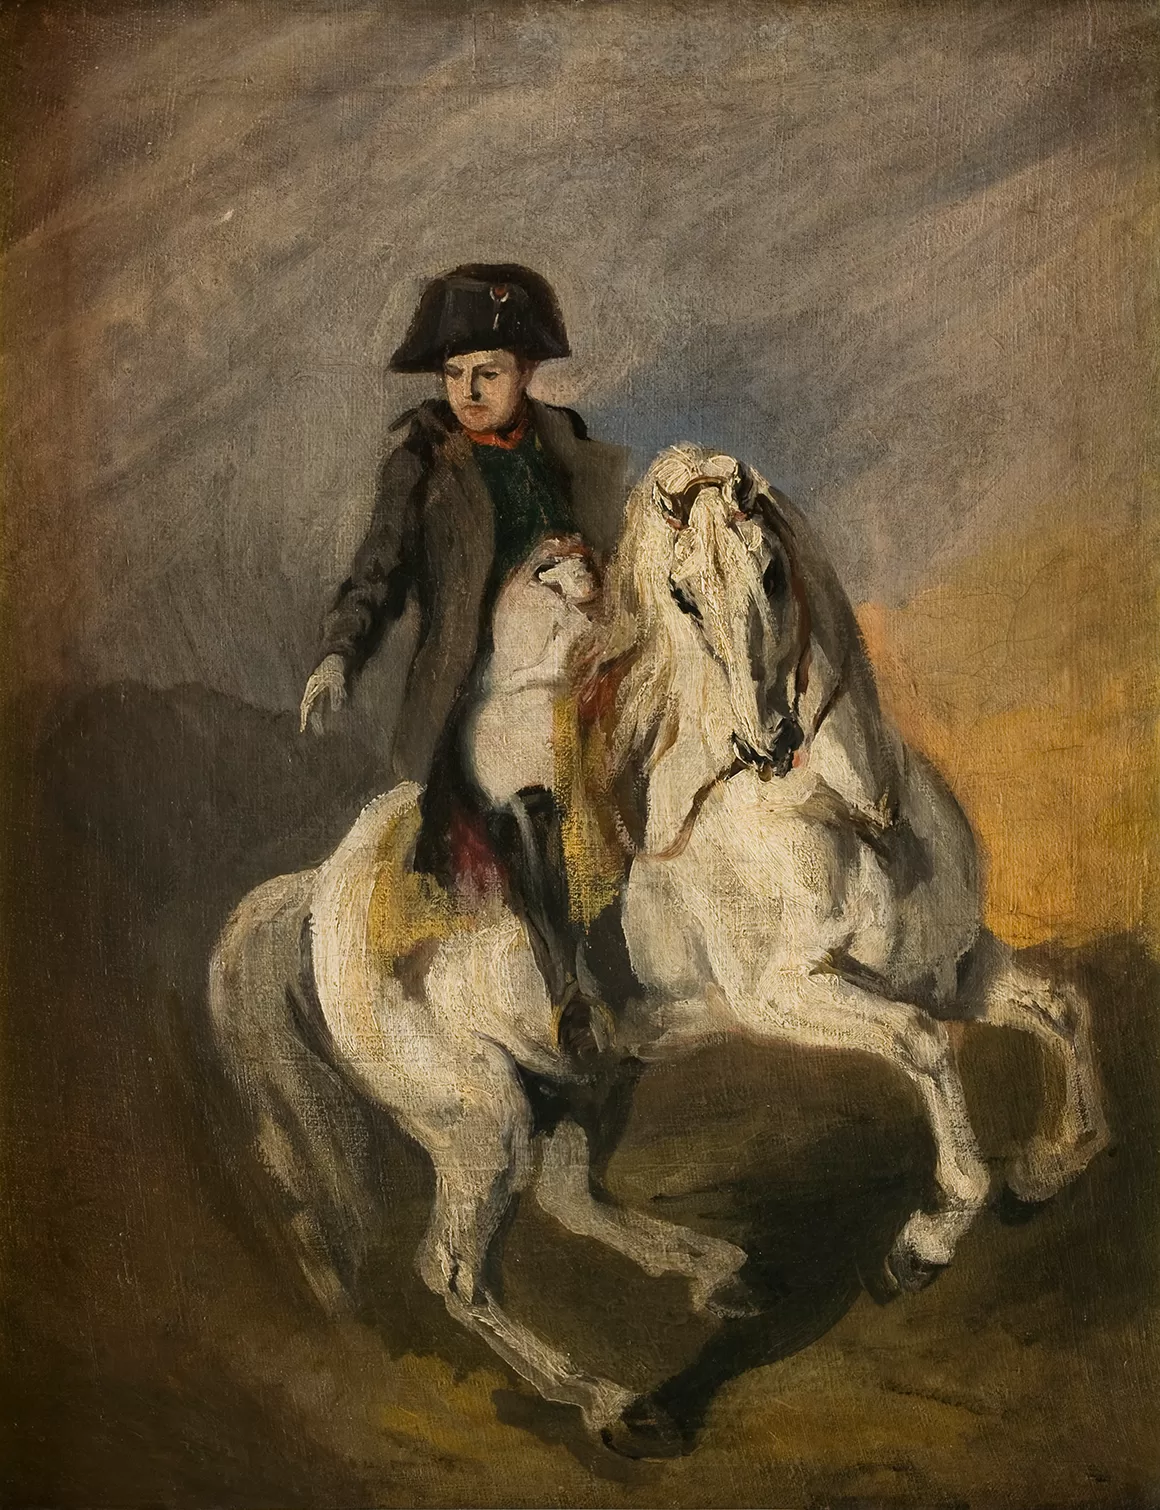 Obraz: Piotr Michałowski, „Napoleon na siwym koniu”, 1842–1845